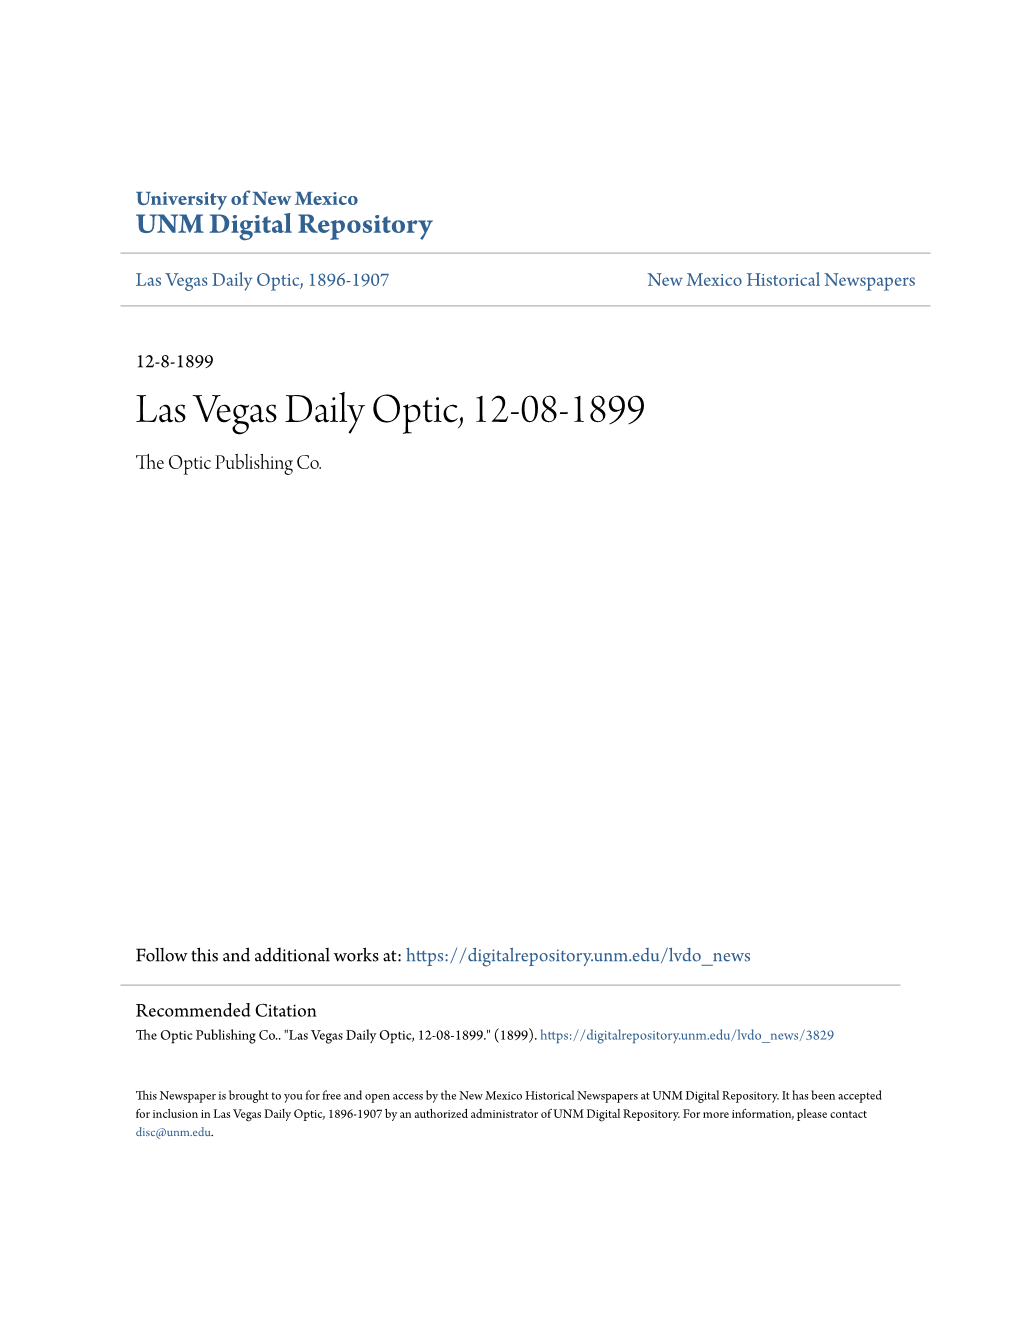 Las Vegas Daily Optic, 12-08-1899 the Optic Publishing Co